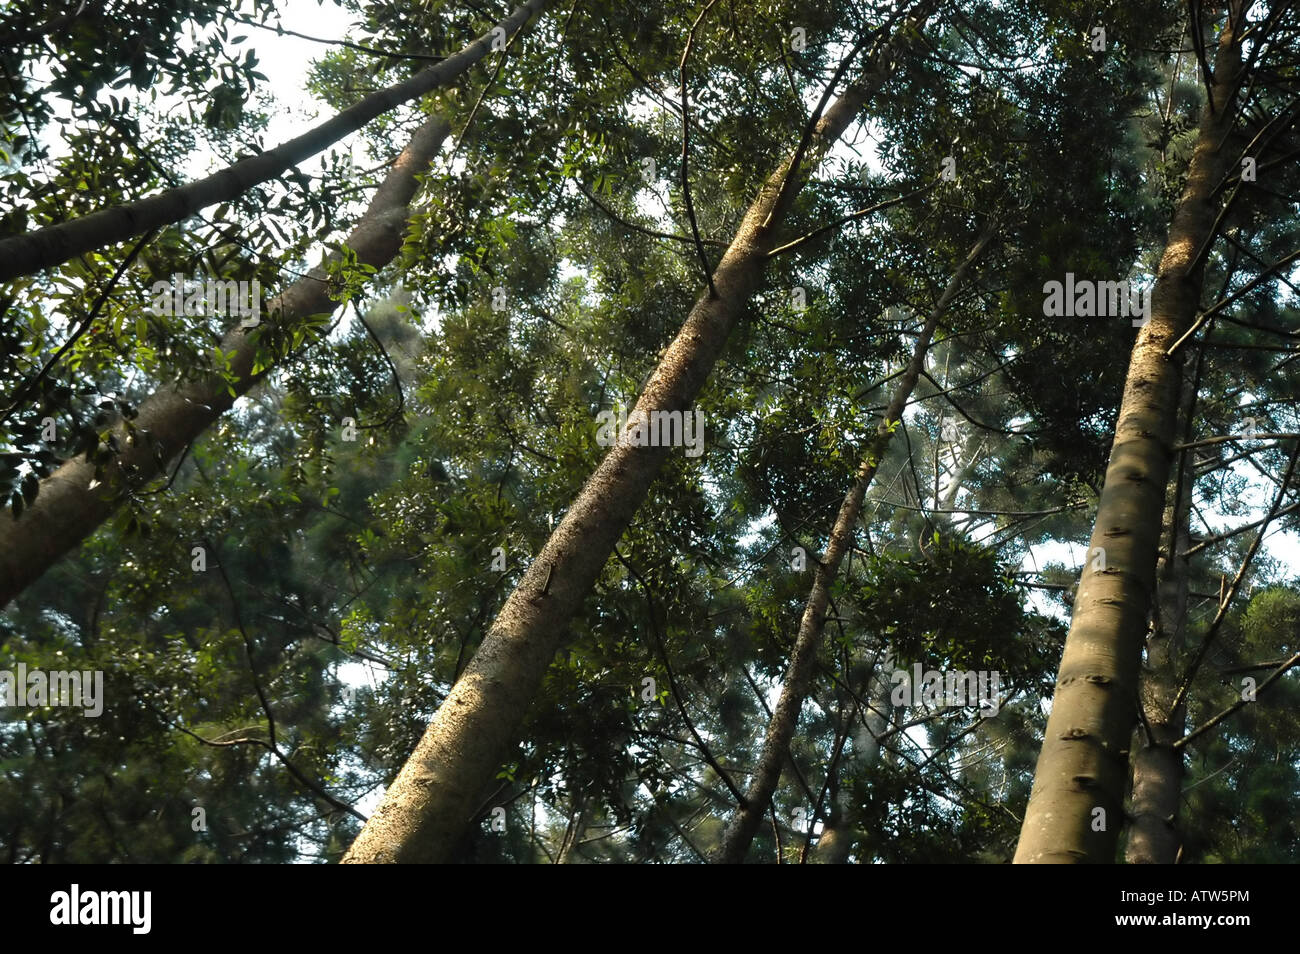 bunya pine tree Stock Photo